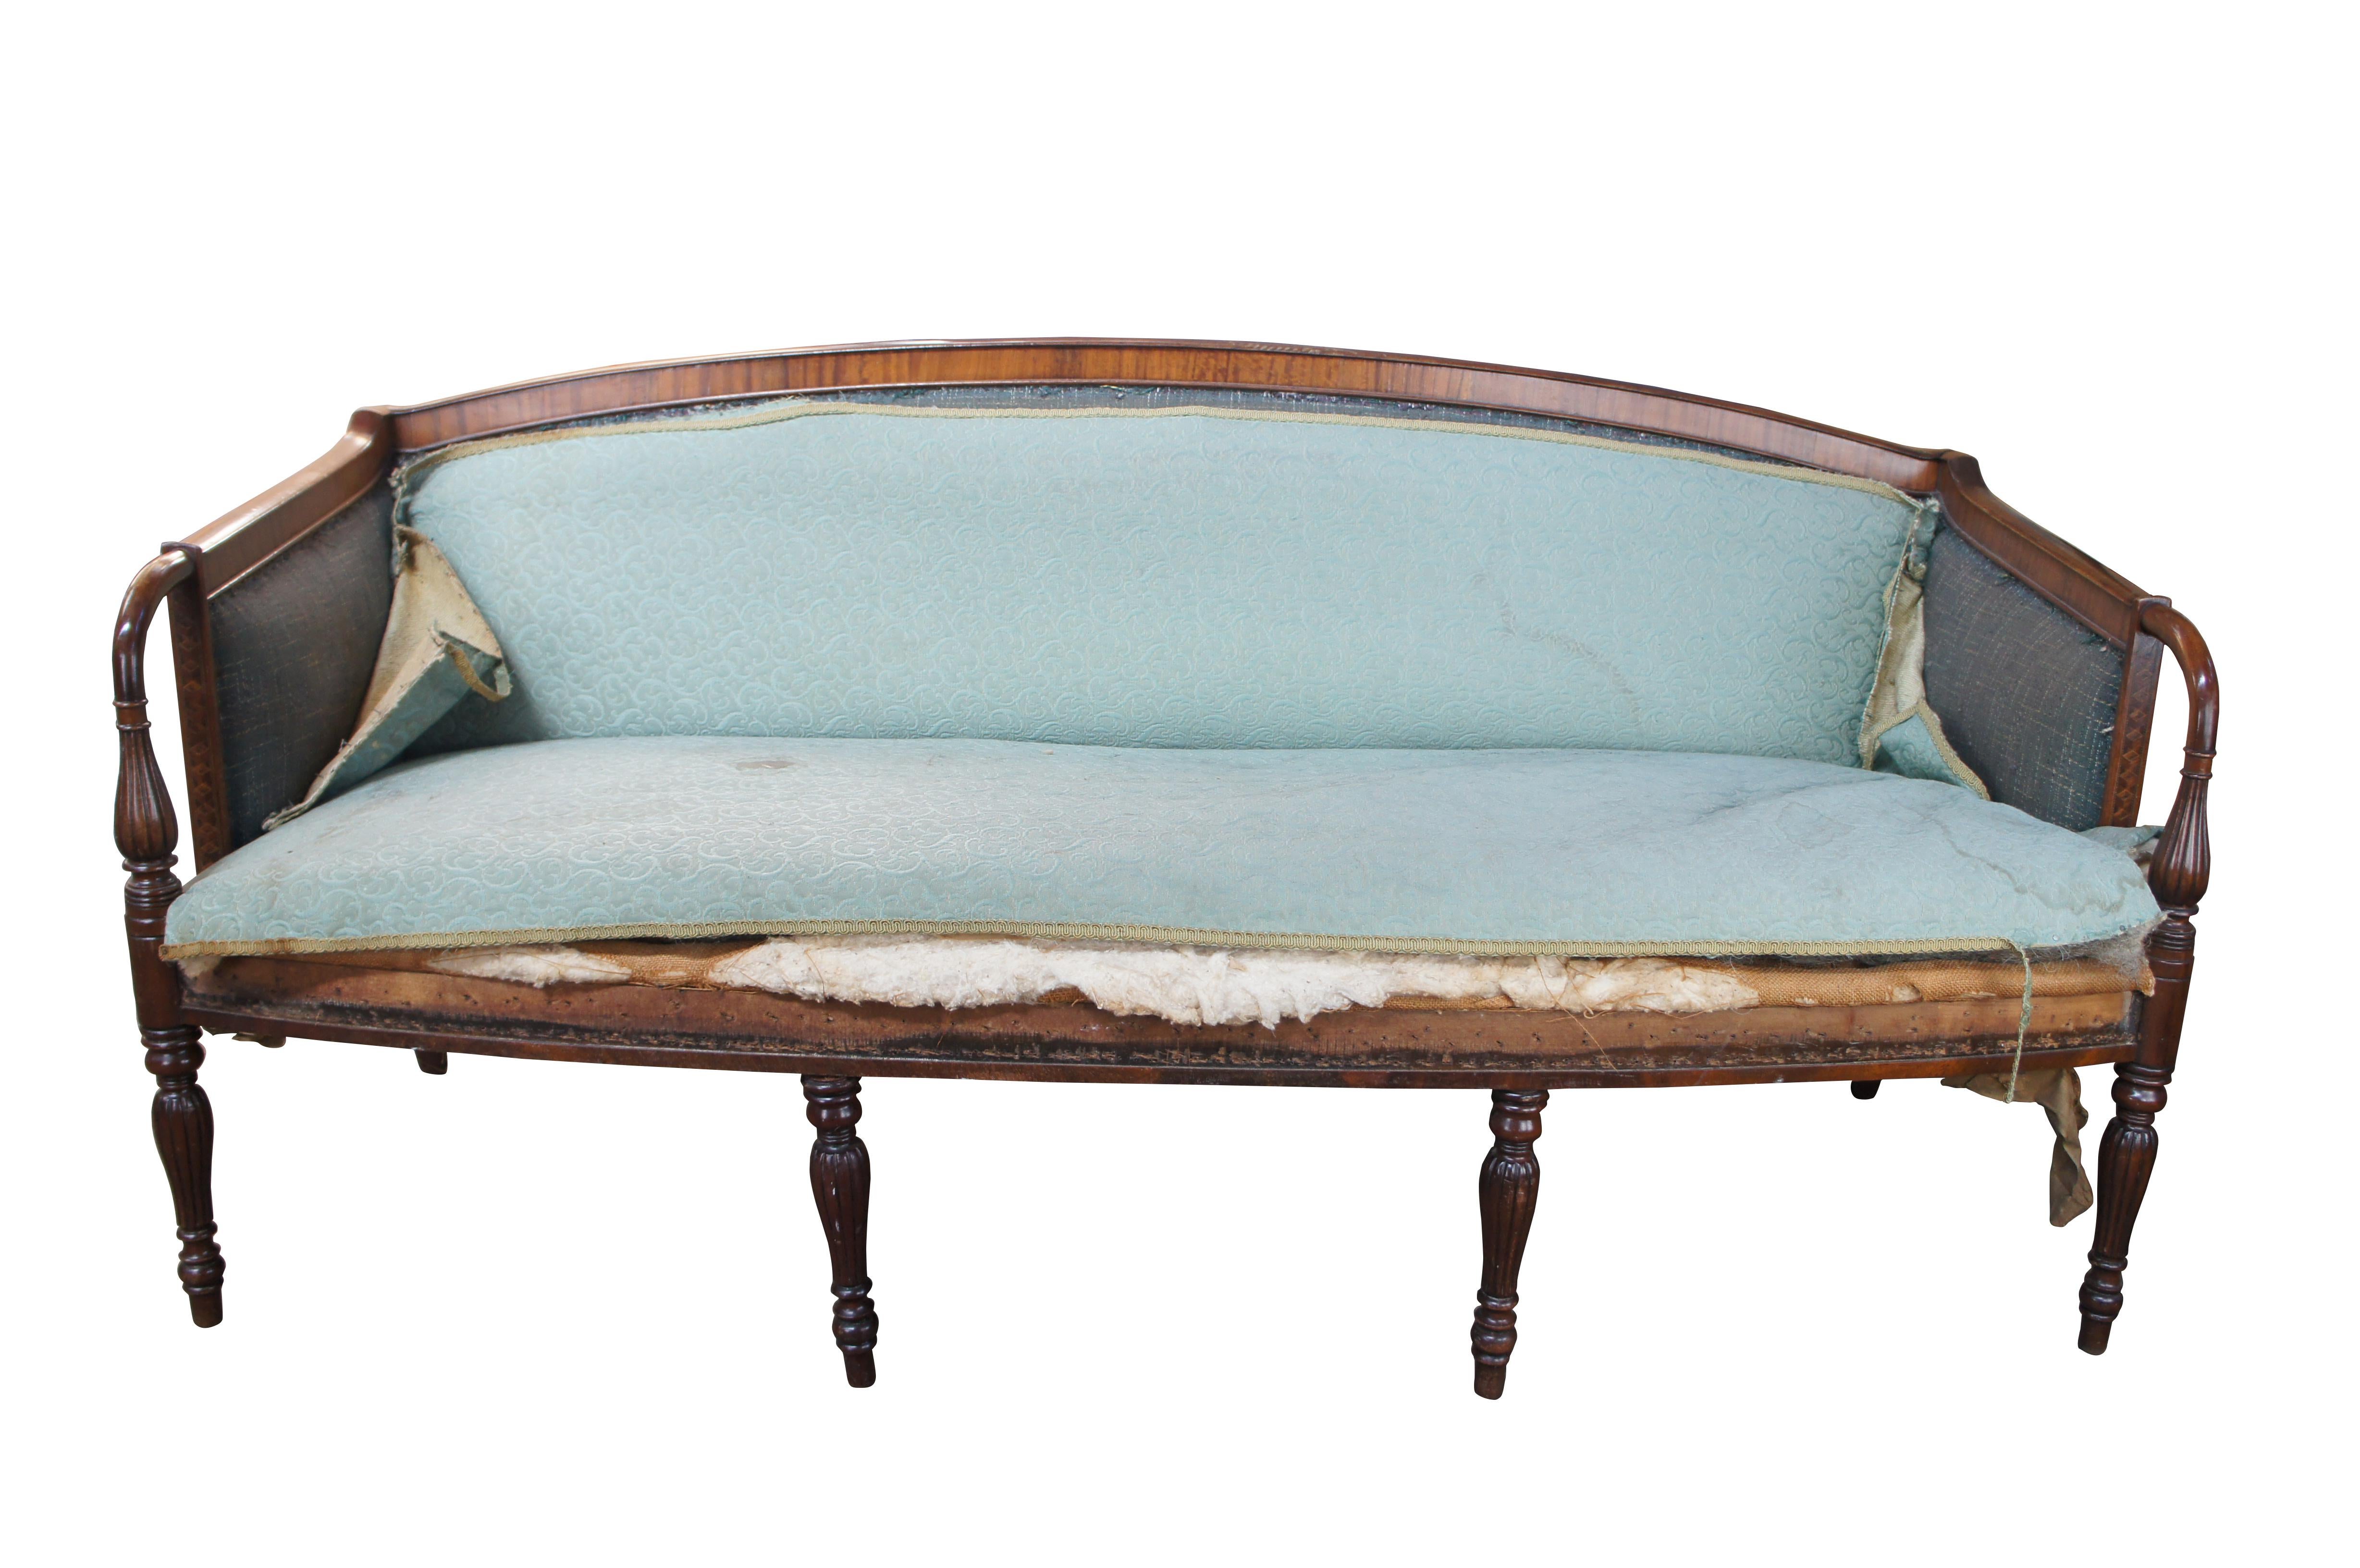 Ein sehr schönes amerikanisches geschnitztes Mahagoni-Sofa aus der Bundeszeit, um 1810. Der Rahmen besteht aus einem Bogenrücken mit Querbändern. Abgeschrägte Arme führen zu geriffelten Stützen vor einer bemerkenswerten dreidimensionalen Würfel- und